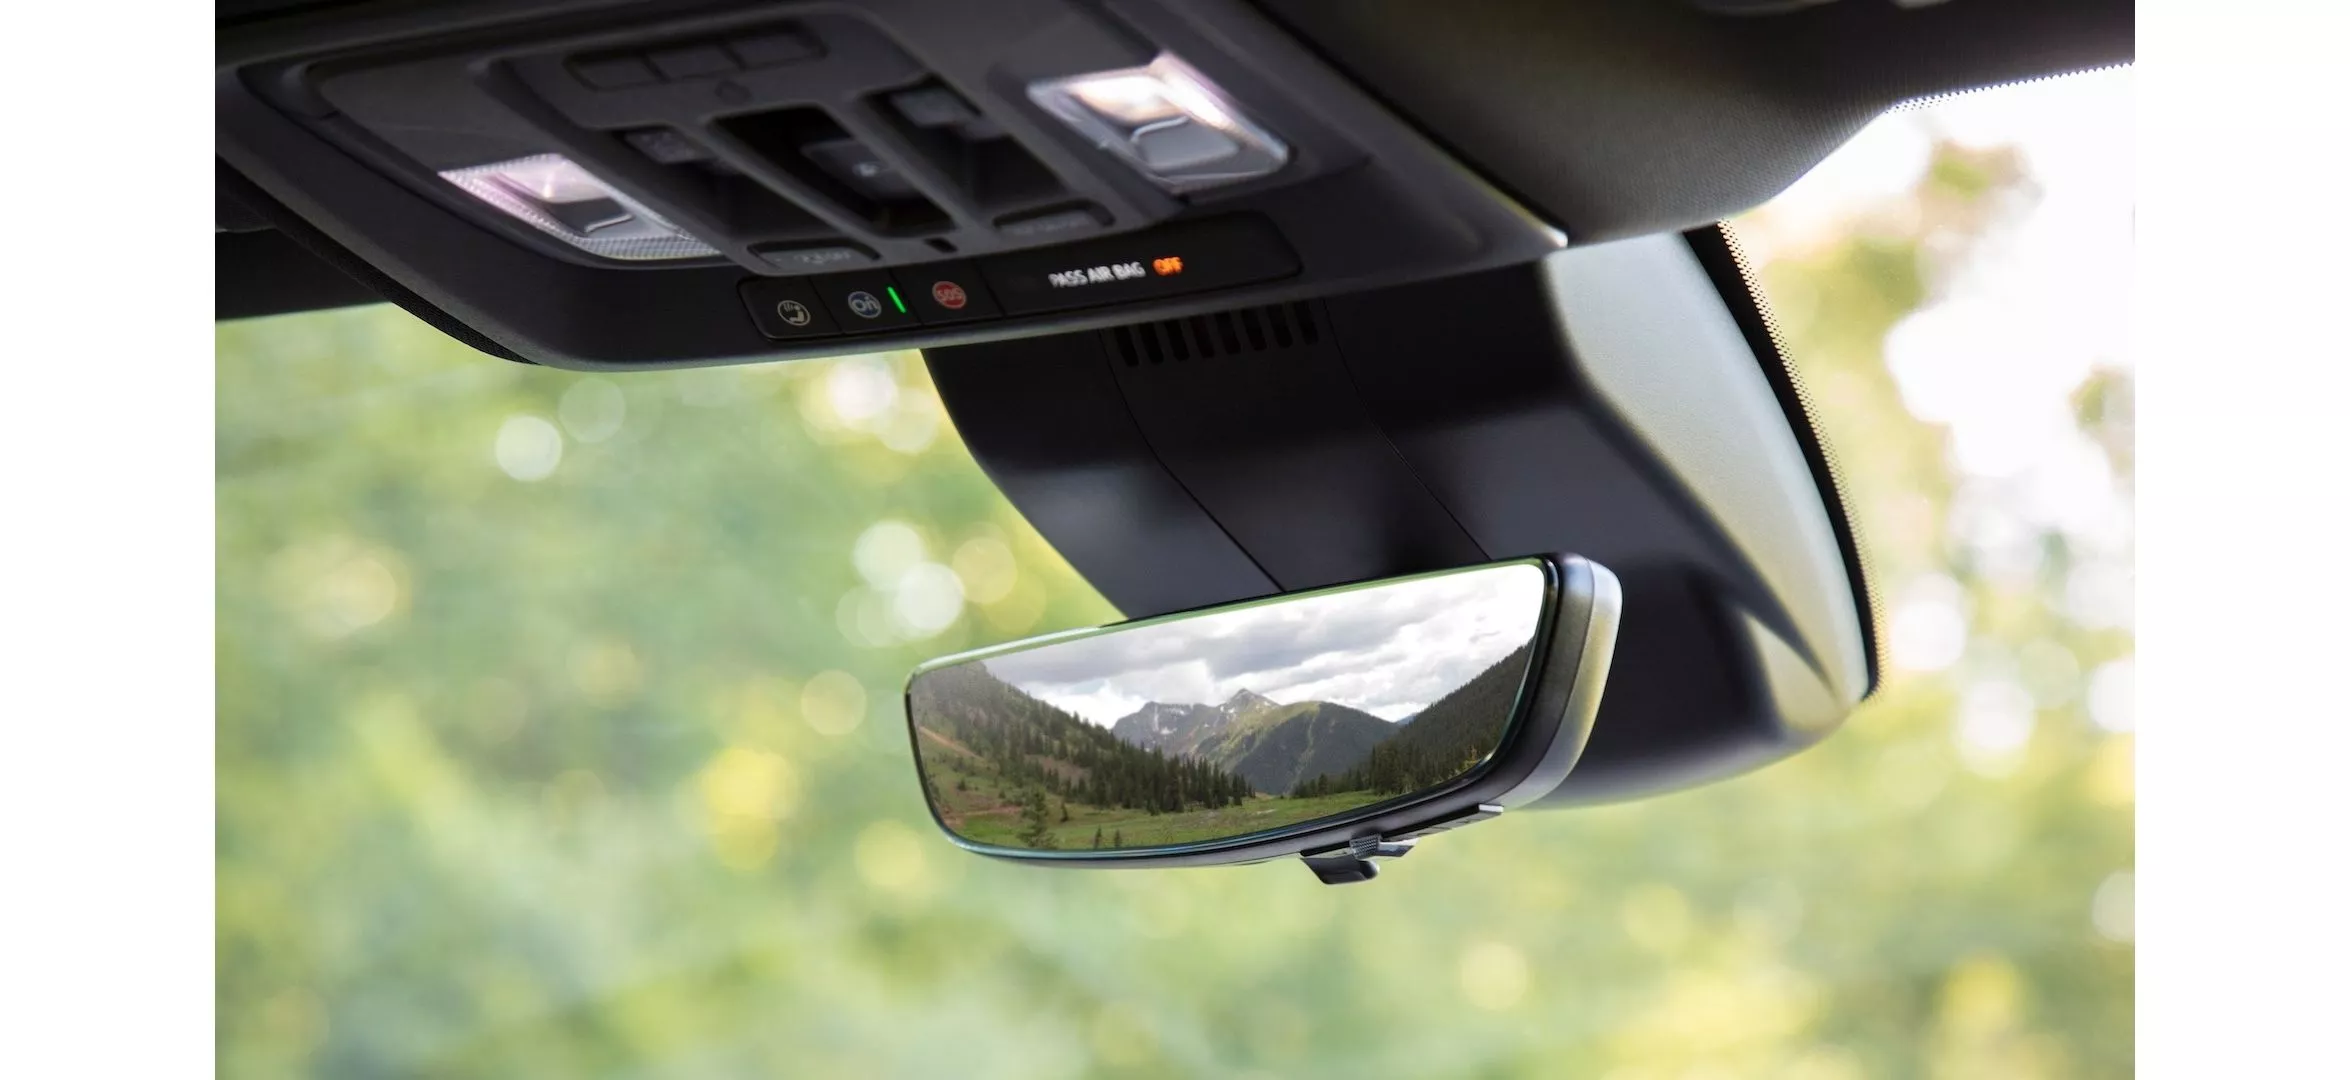 Chevy Silverado - Rear camera Mirror